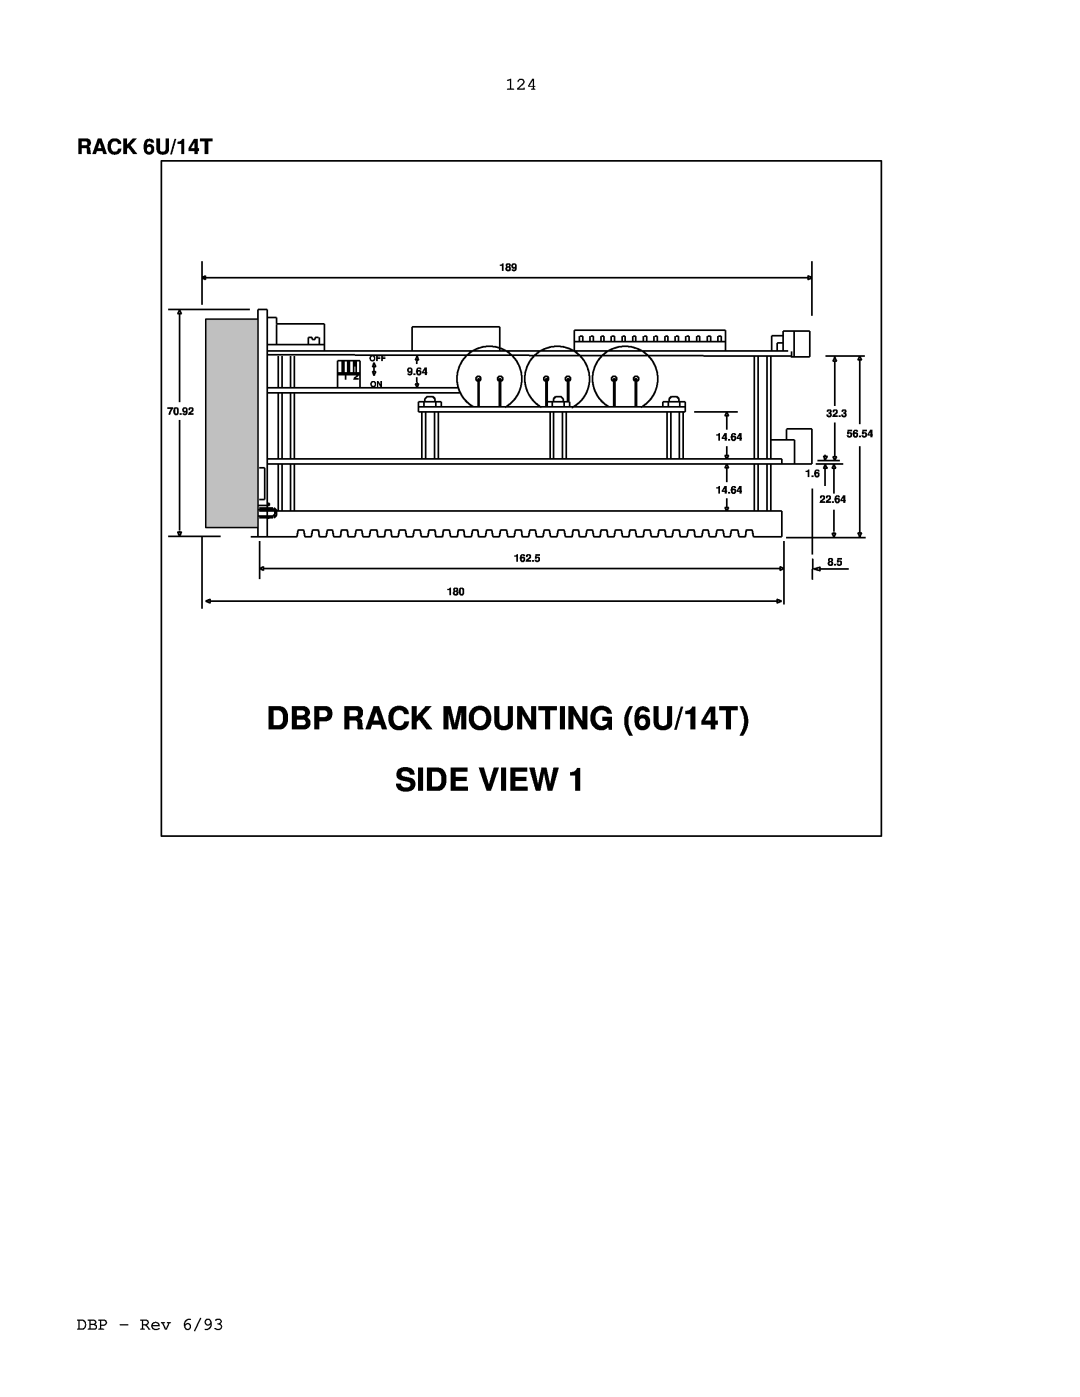 Elmo DBP SERIES manual DBP RACK MOUNTING 6U/14T, Side View, RACK 6U/14T 